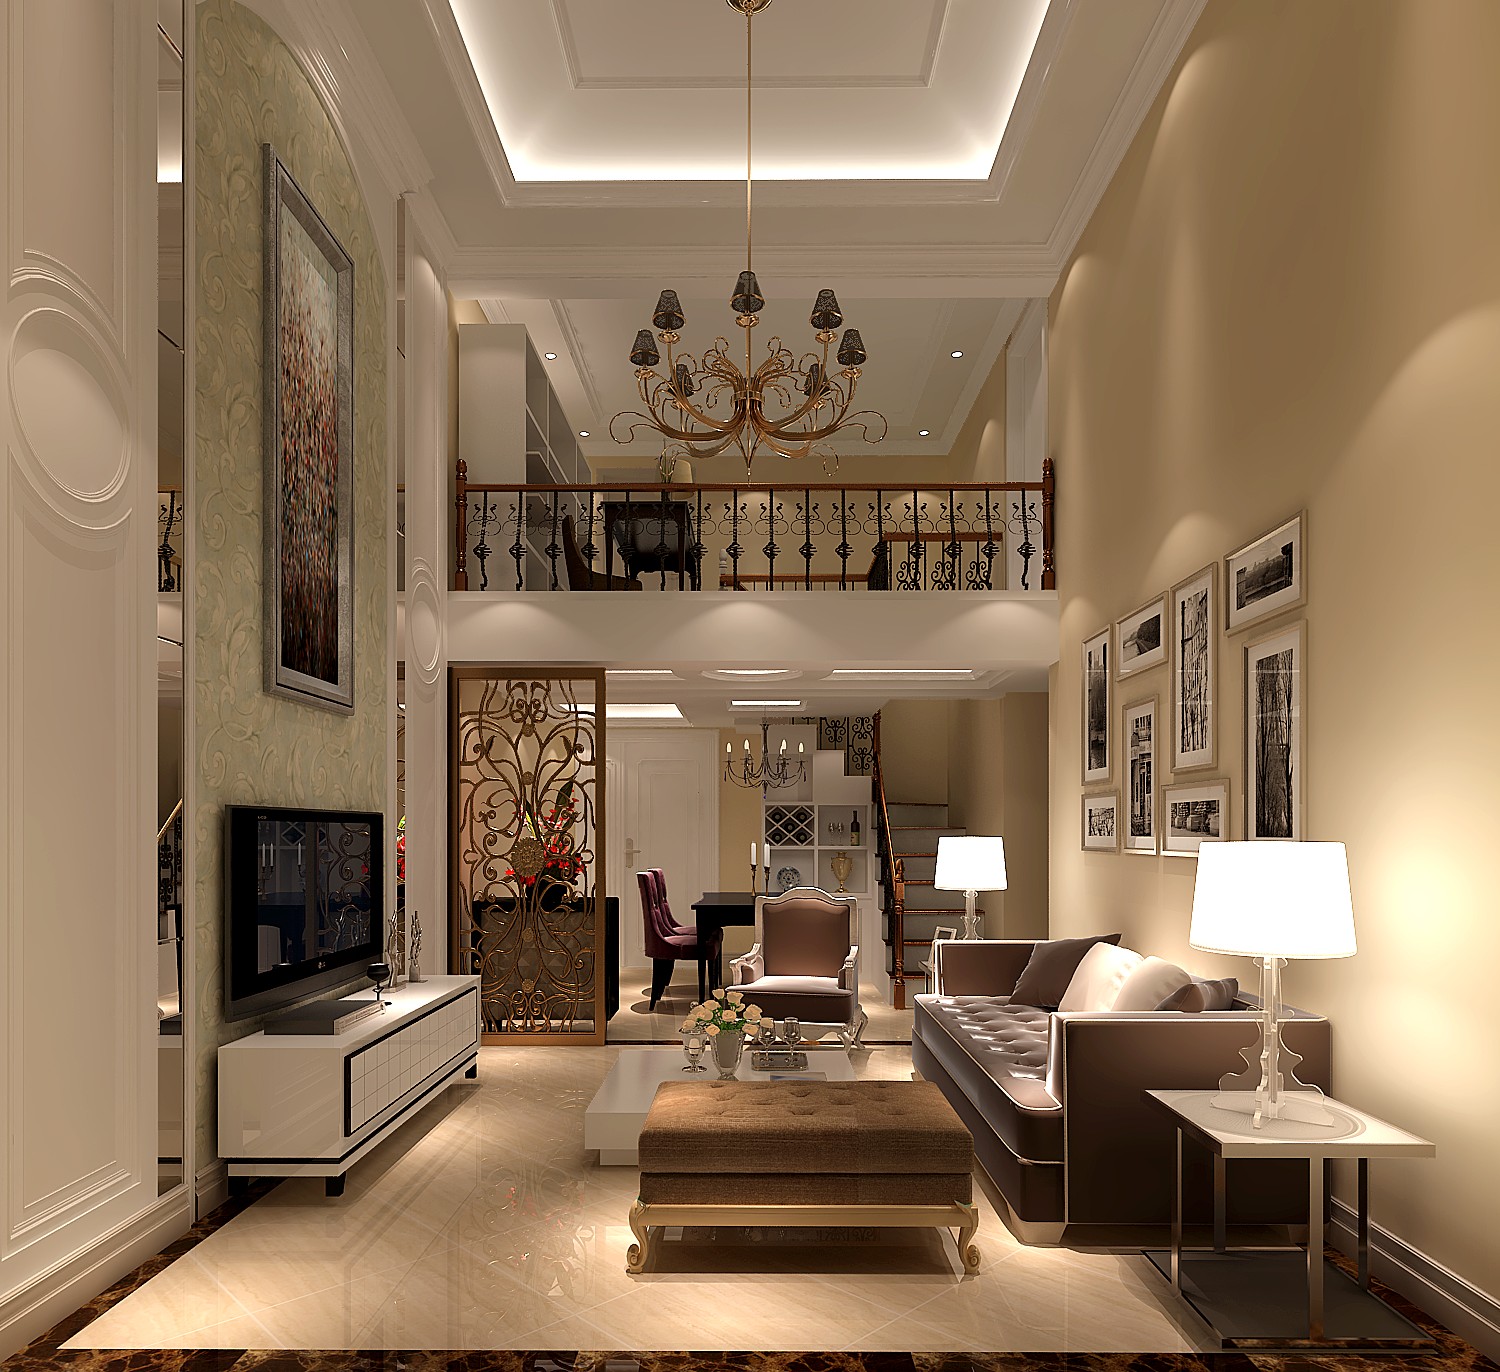 高度国际 未来明珠 简约风格 公寓 客厅图片来自高度国际在未来明珠家园的分享